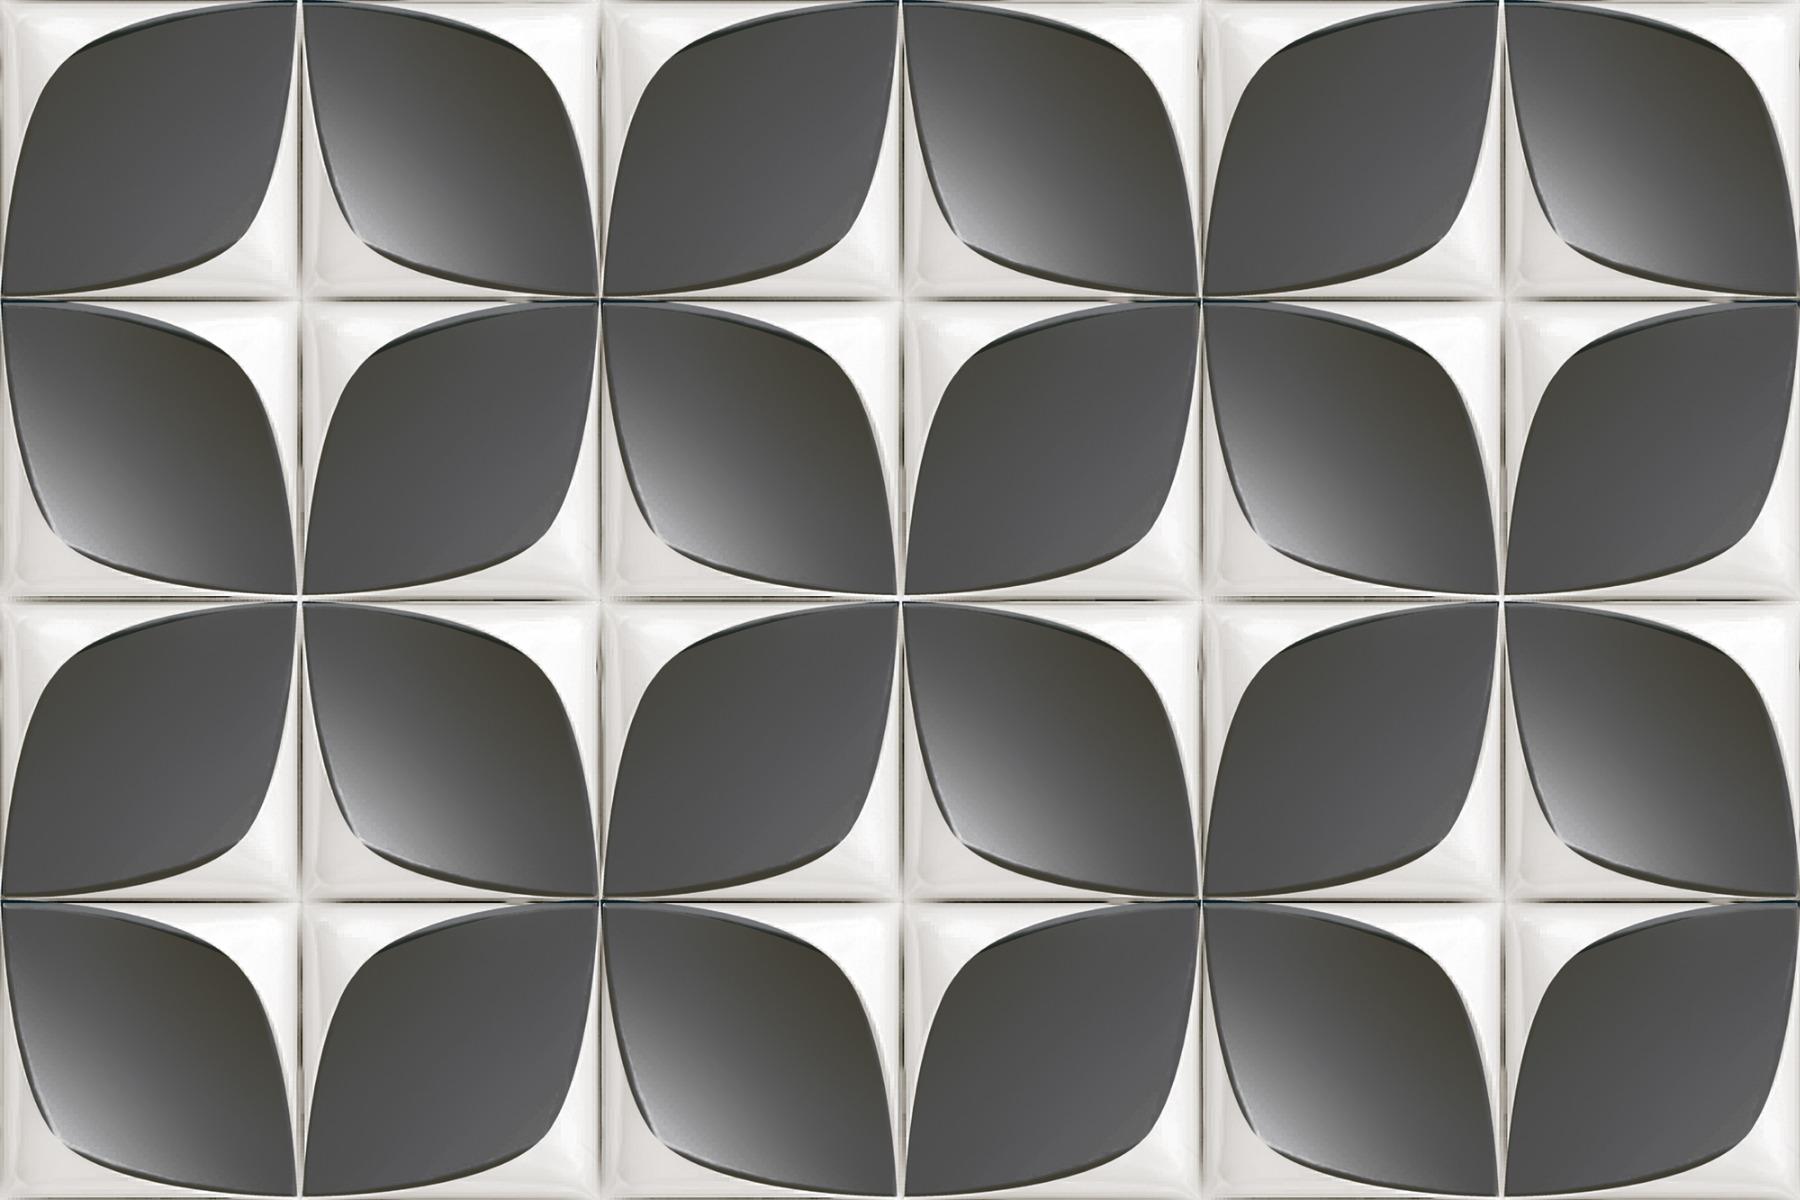 Digital Glazed Vitrified Tiles for Bathroom Tiles, Kitchen Tiles, Balcony Tiles